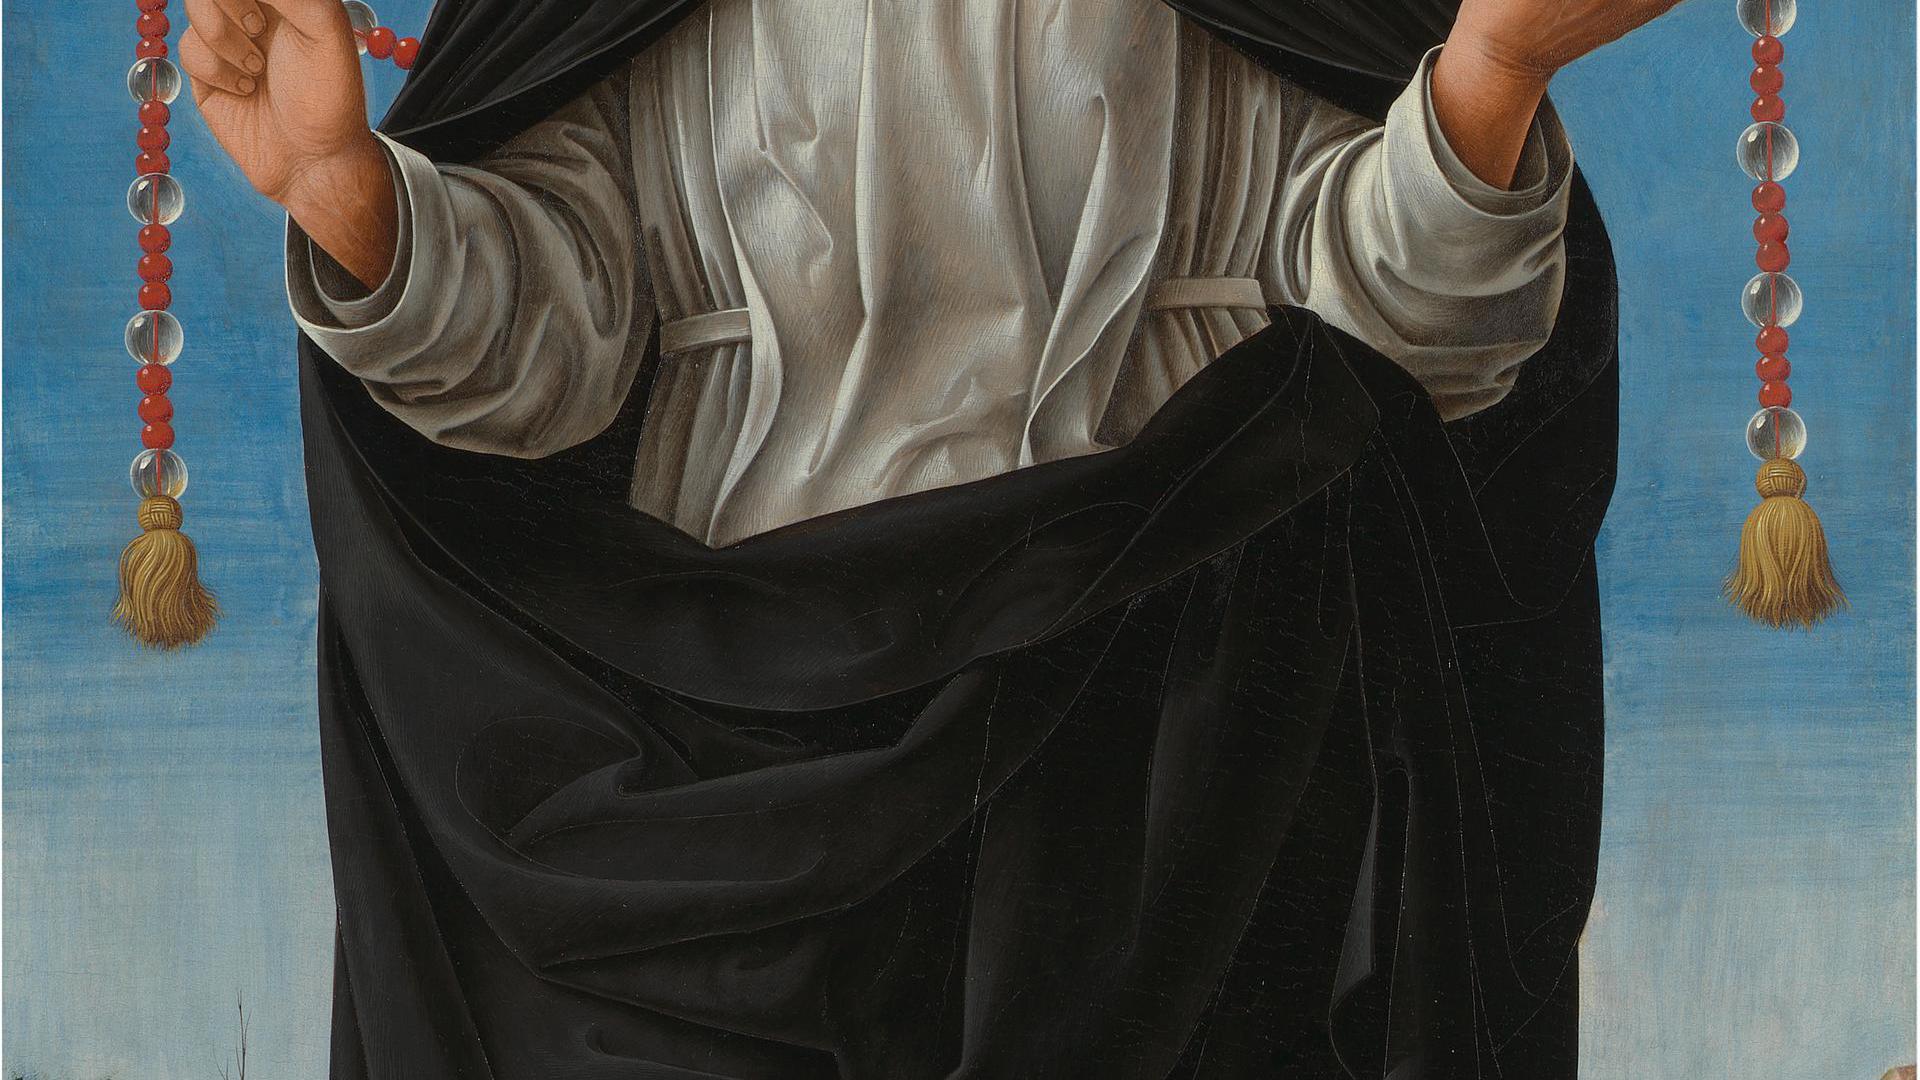 Saint Vincent Ferrer by Francesco del Cossa